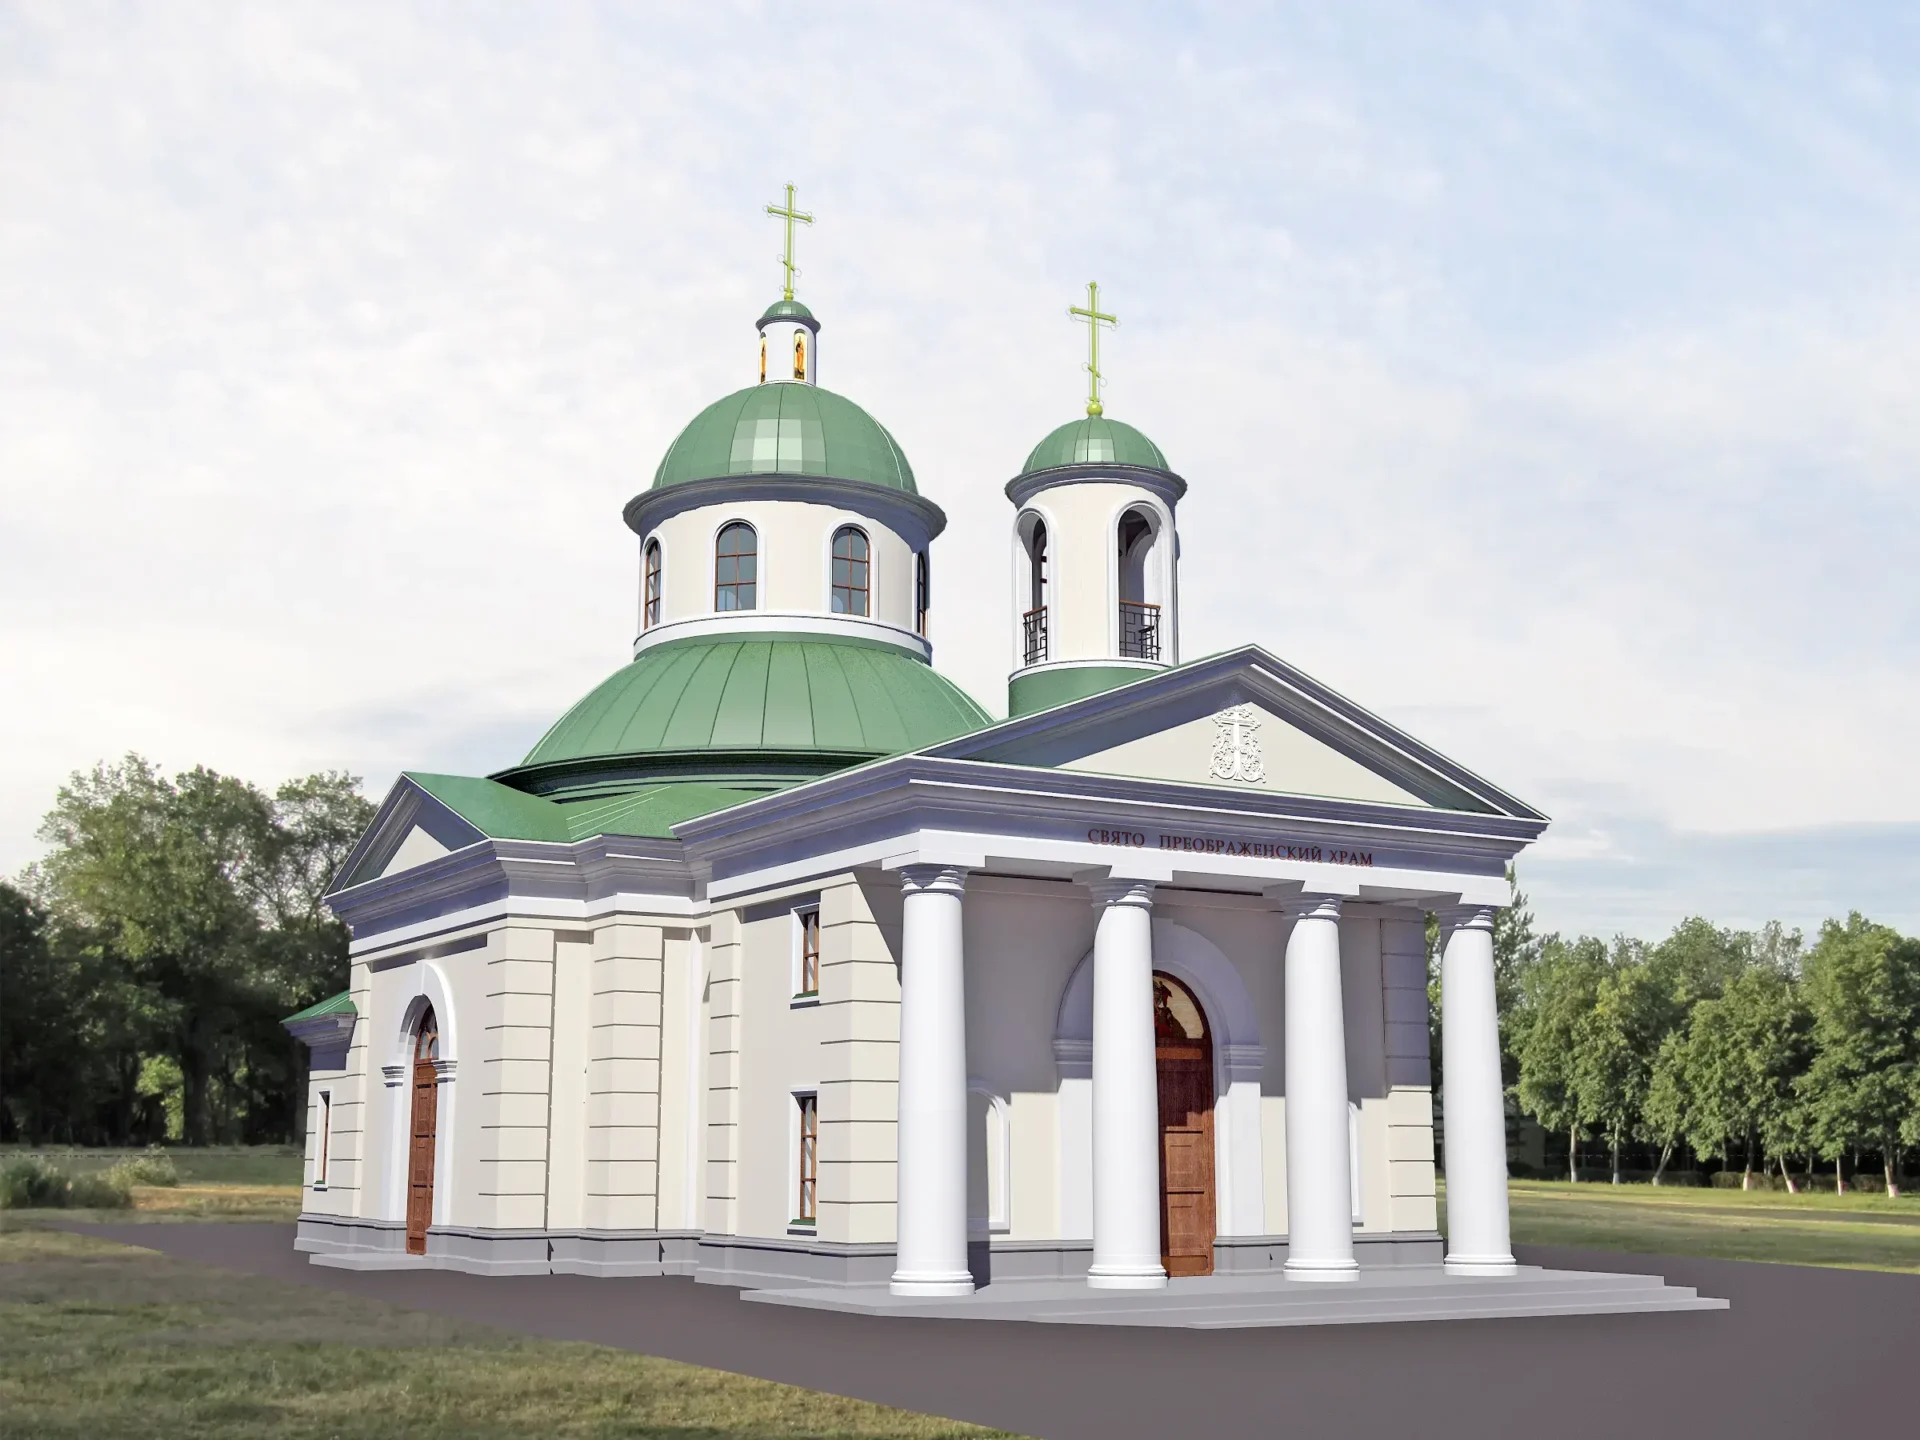 Holy Transfiguration Church in Skovorodynivka